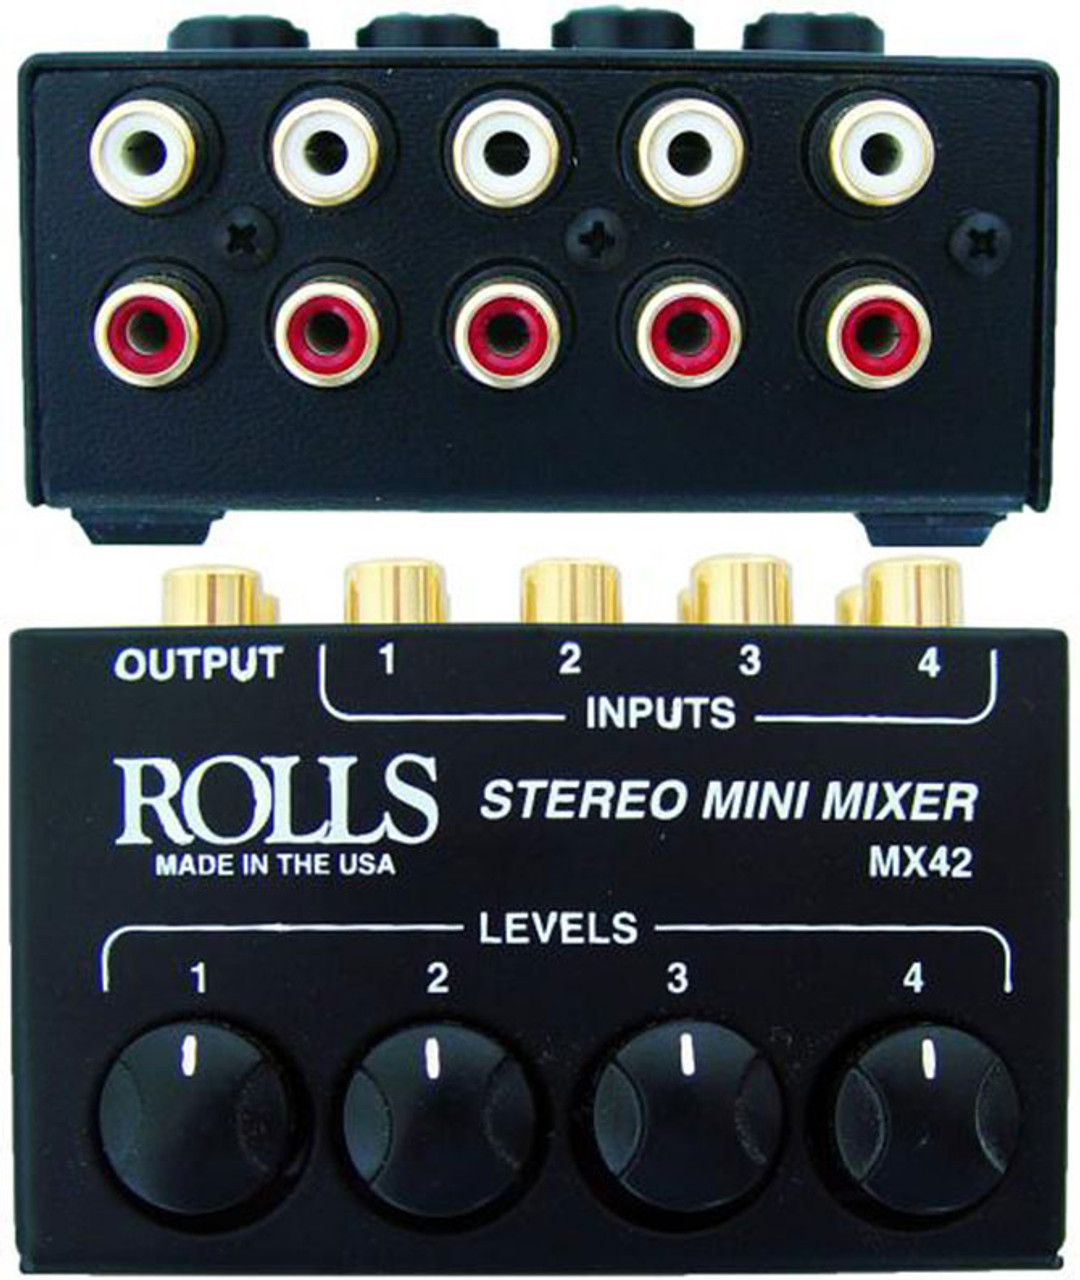 Rolls MX51S Mini Mix 2 Mixer